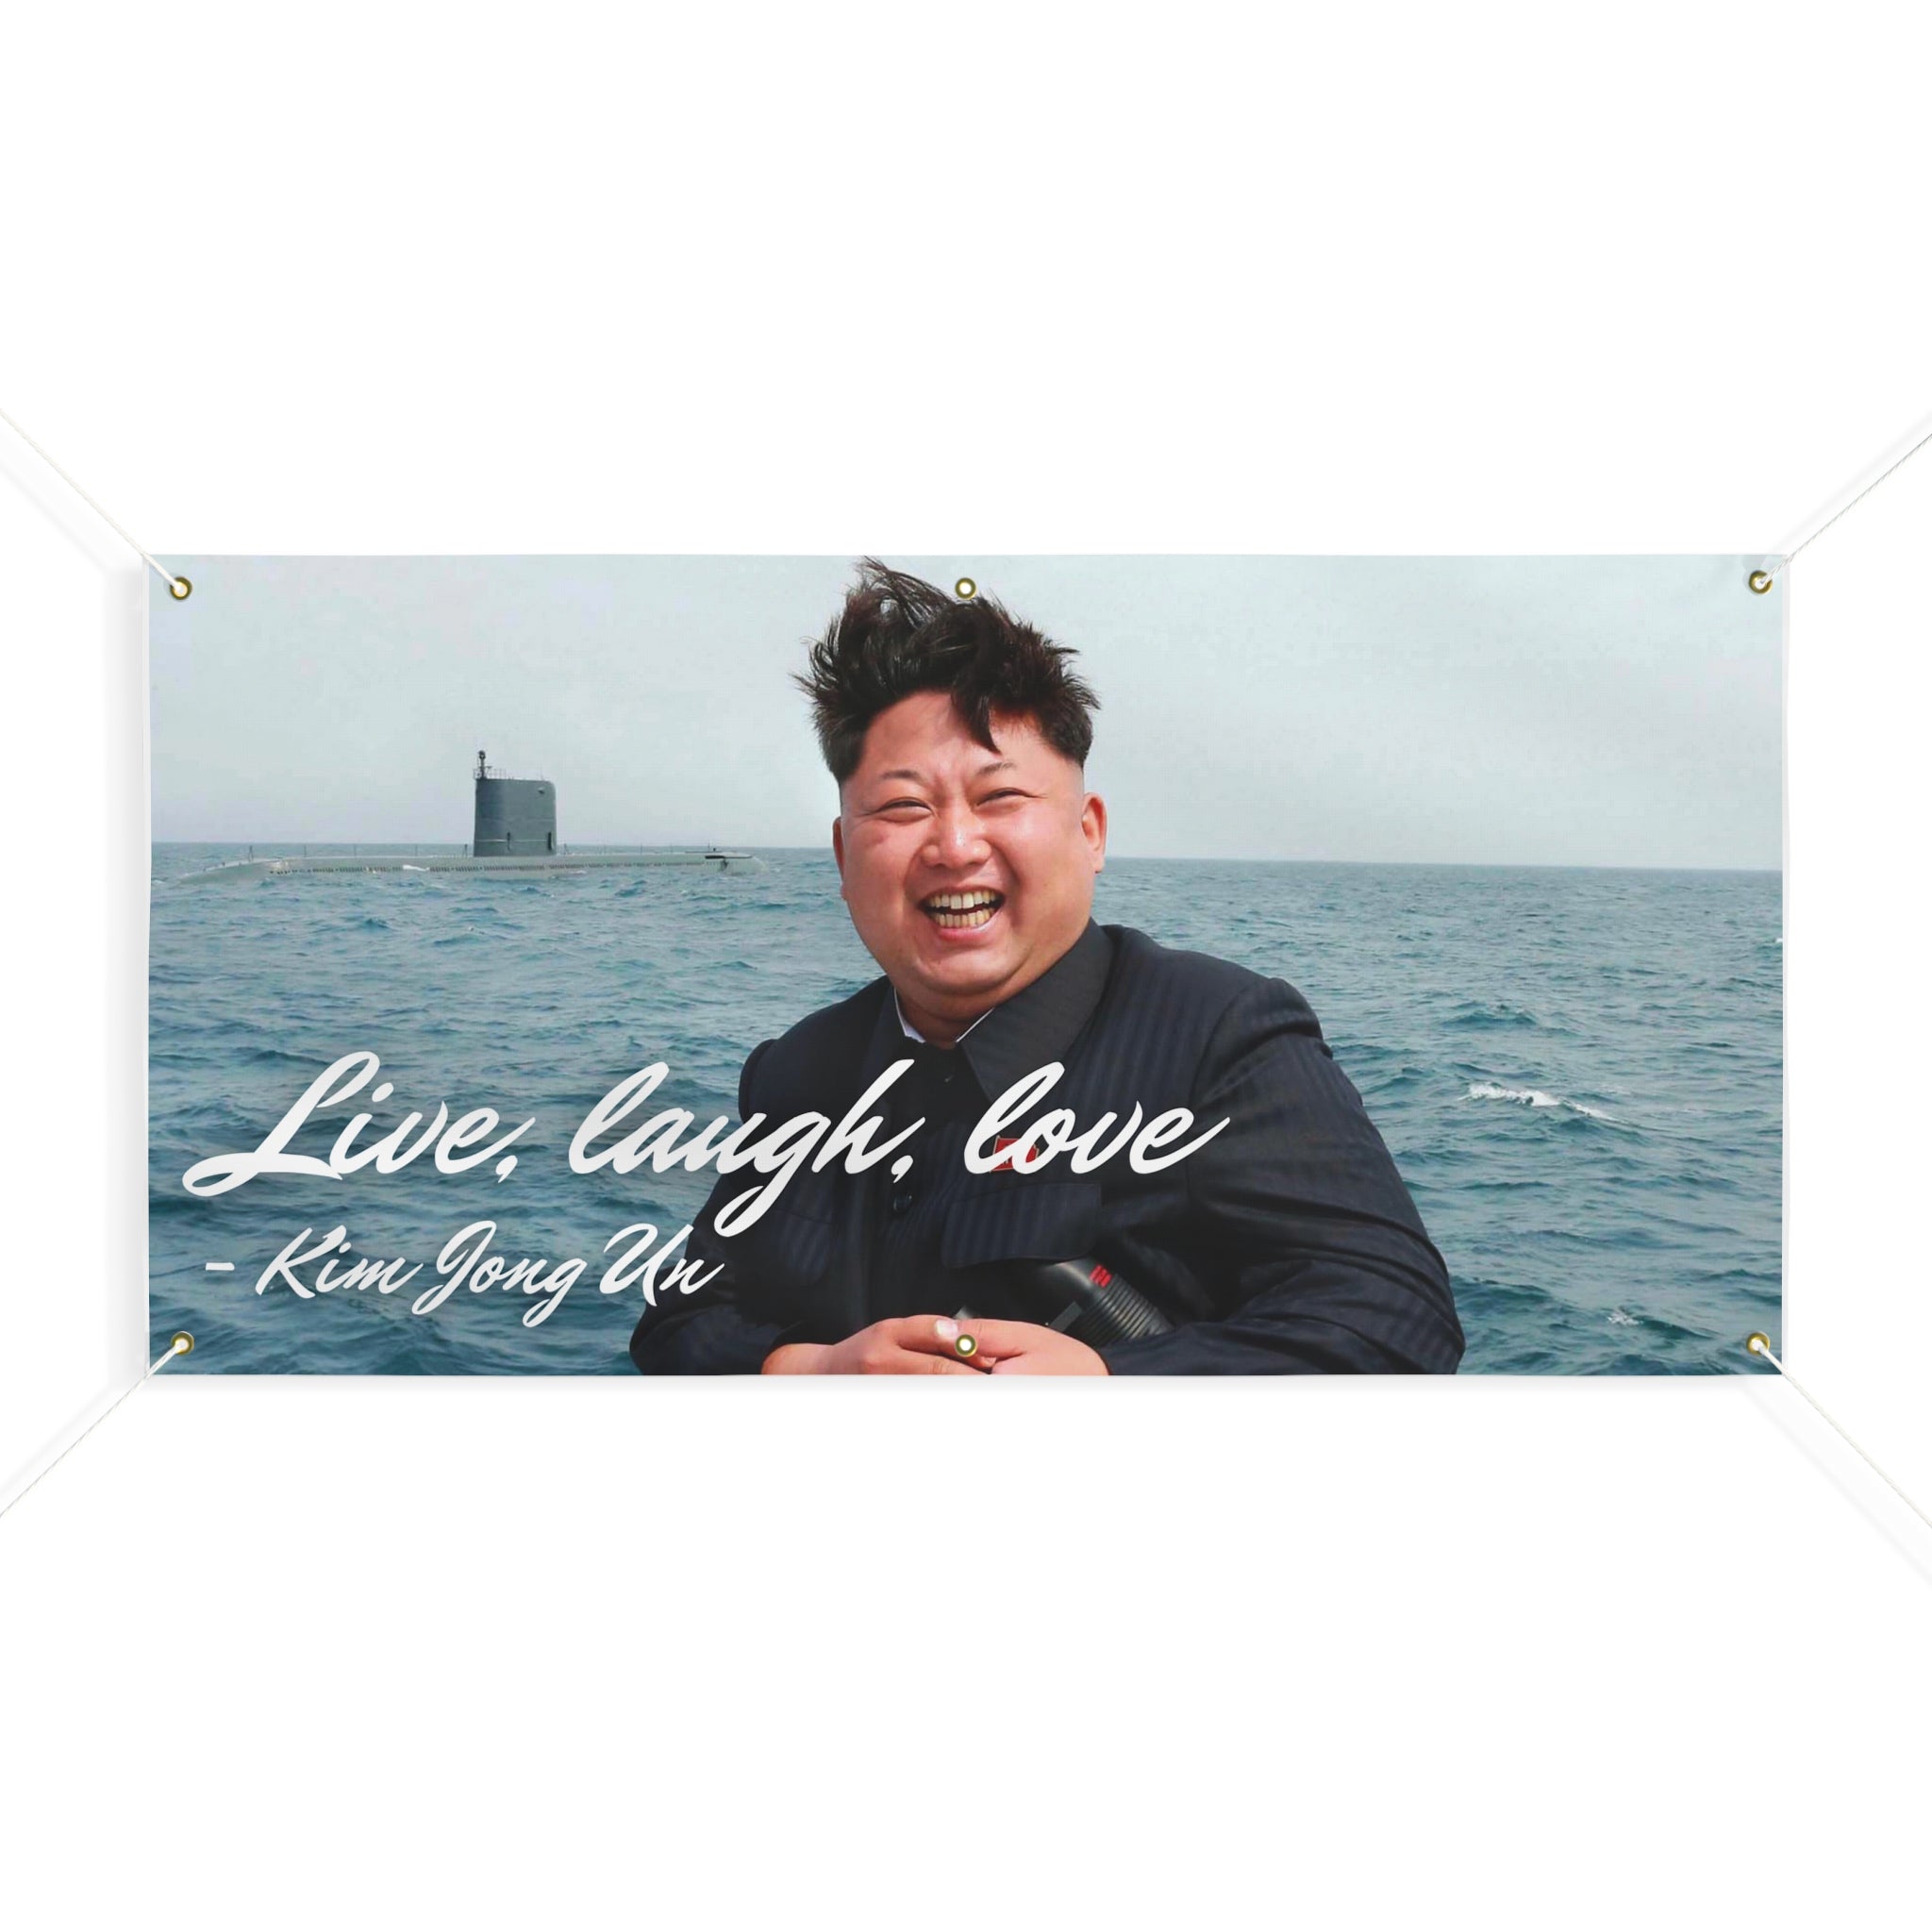 Kim Jong Un Live, laugh, love - Flag